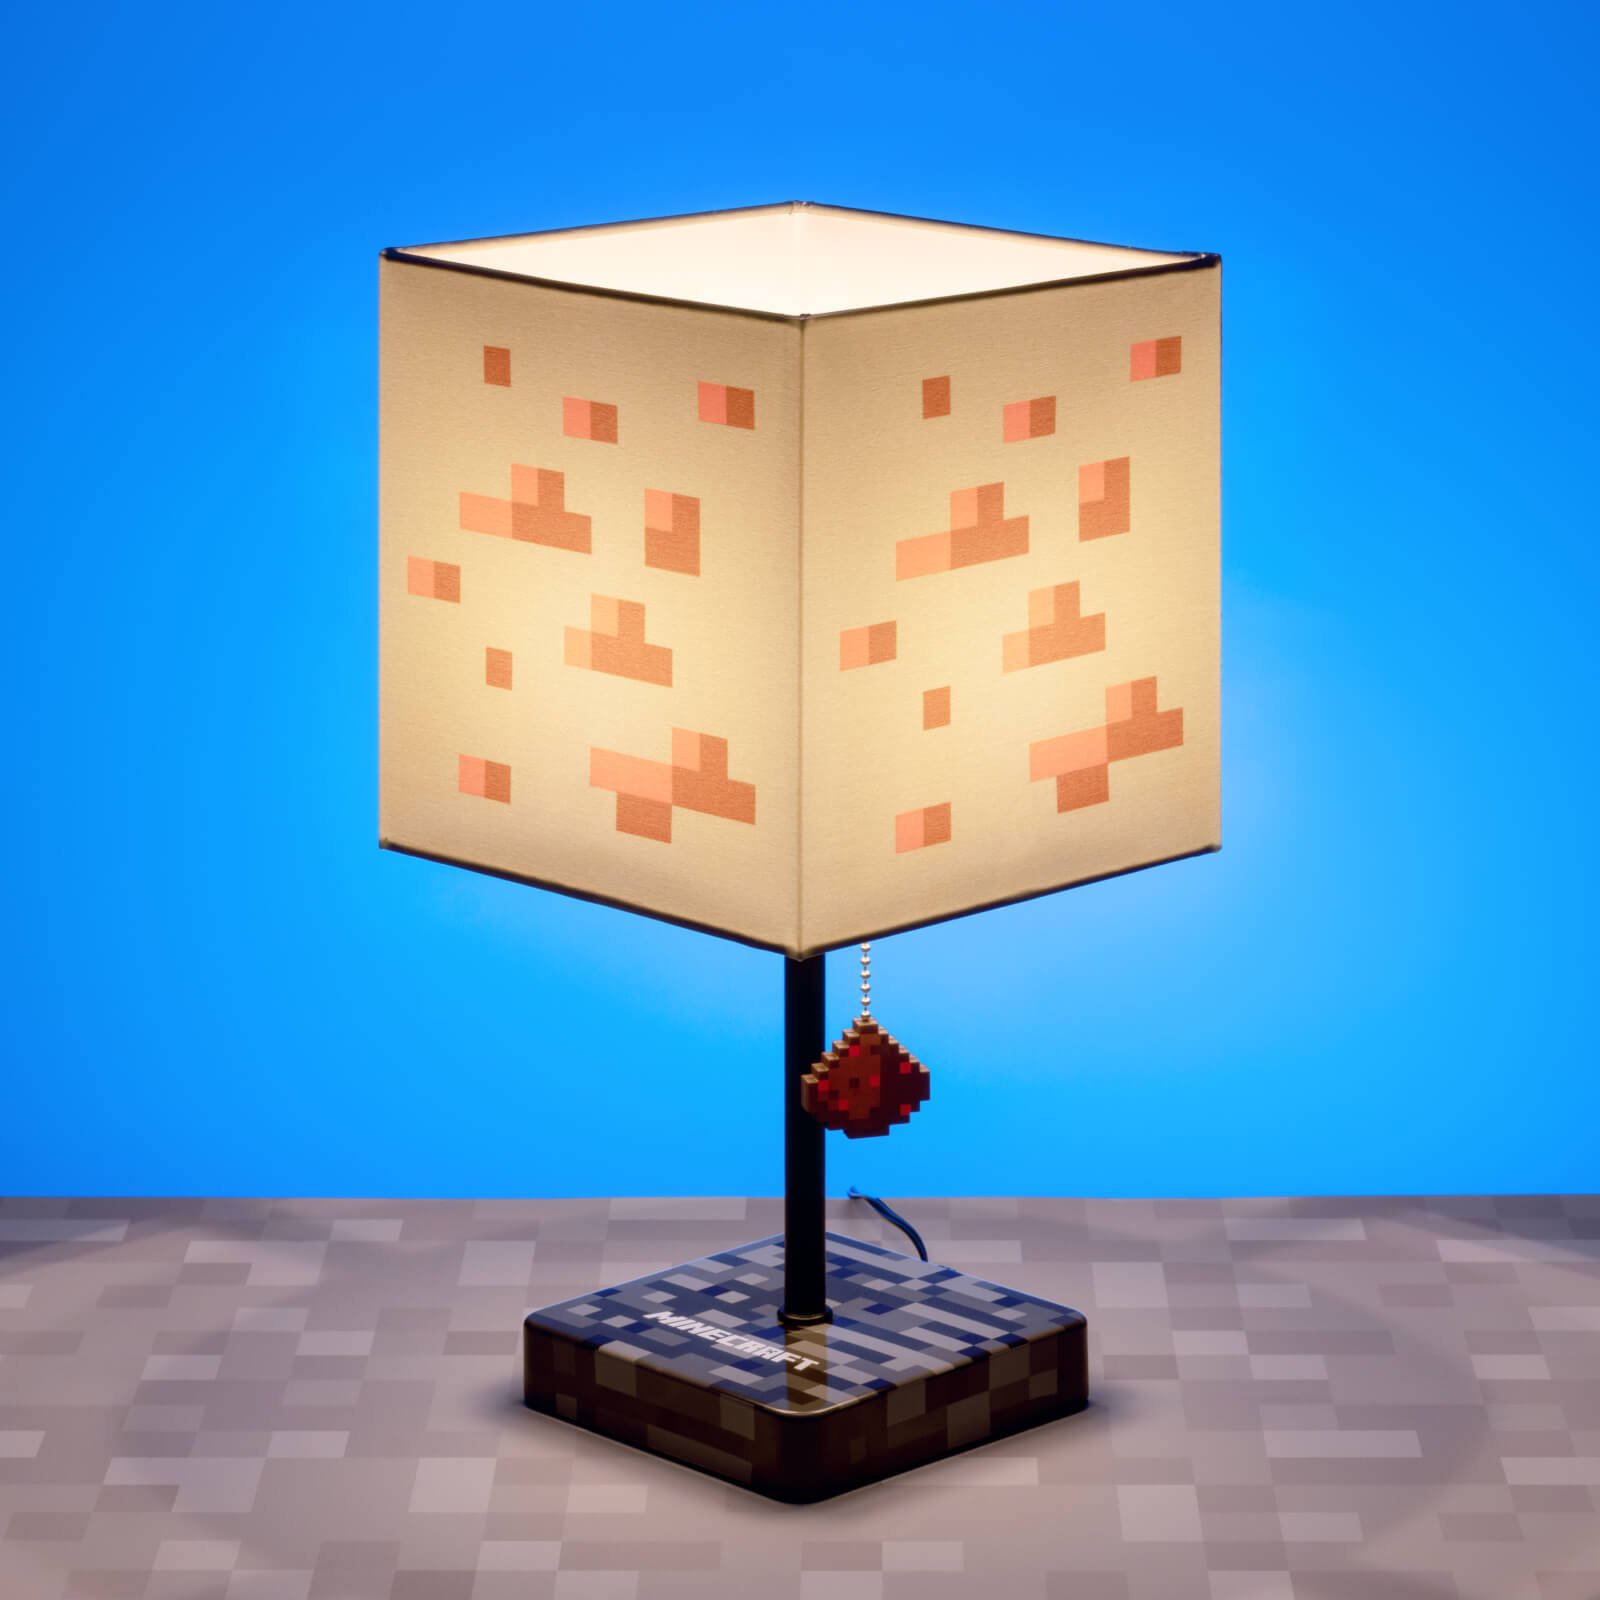 Фонарь в майнкрафте 1.20. Майнкрафт Redstone Lamp. Редстоун лампа в Minecraft. Редстоуновый светильник майнкрафт. Лампа майнкрафт 1.14.